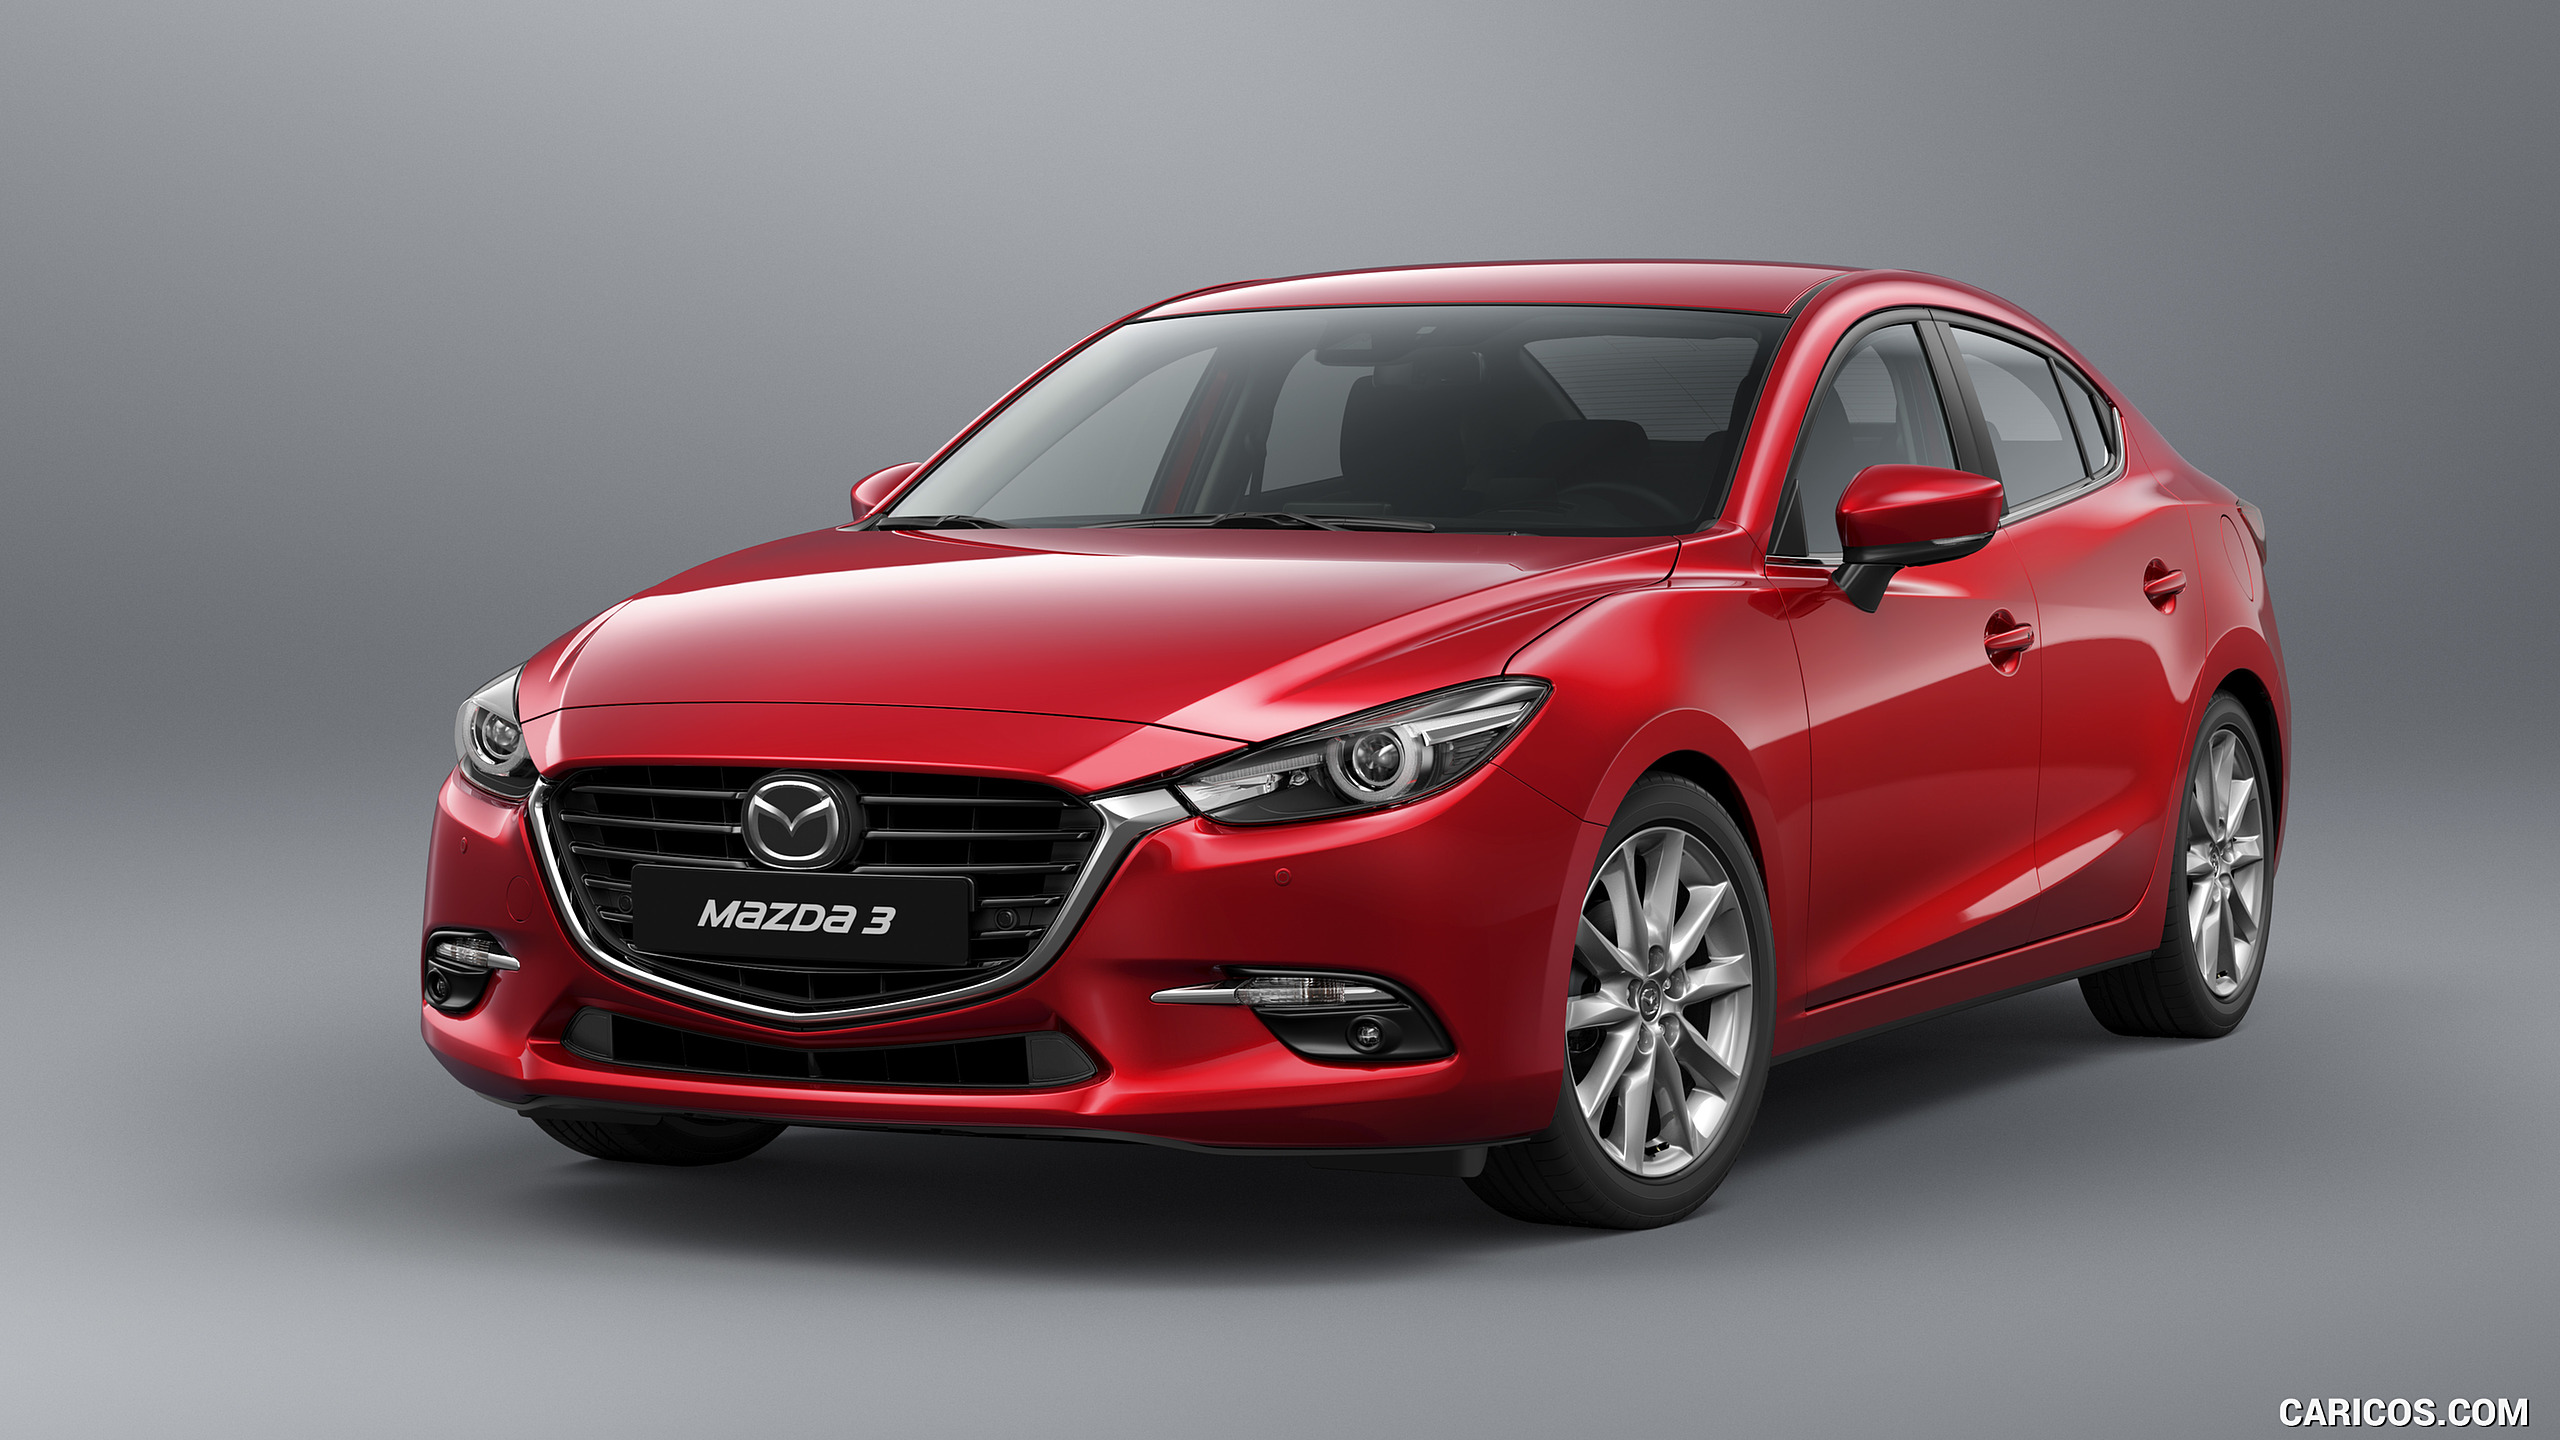 2017 Mazda 3 Sedan - Front, #4 of 13